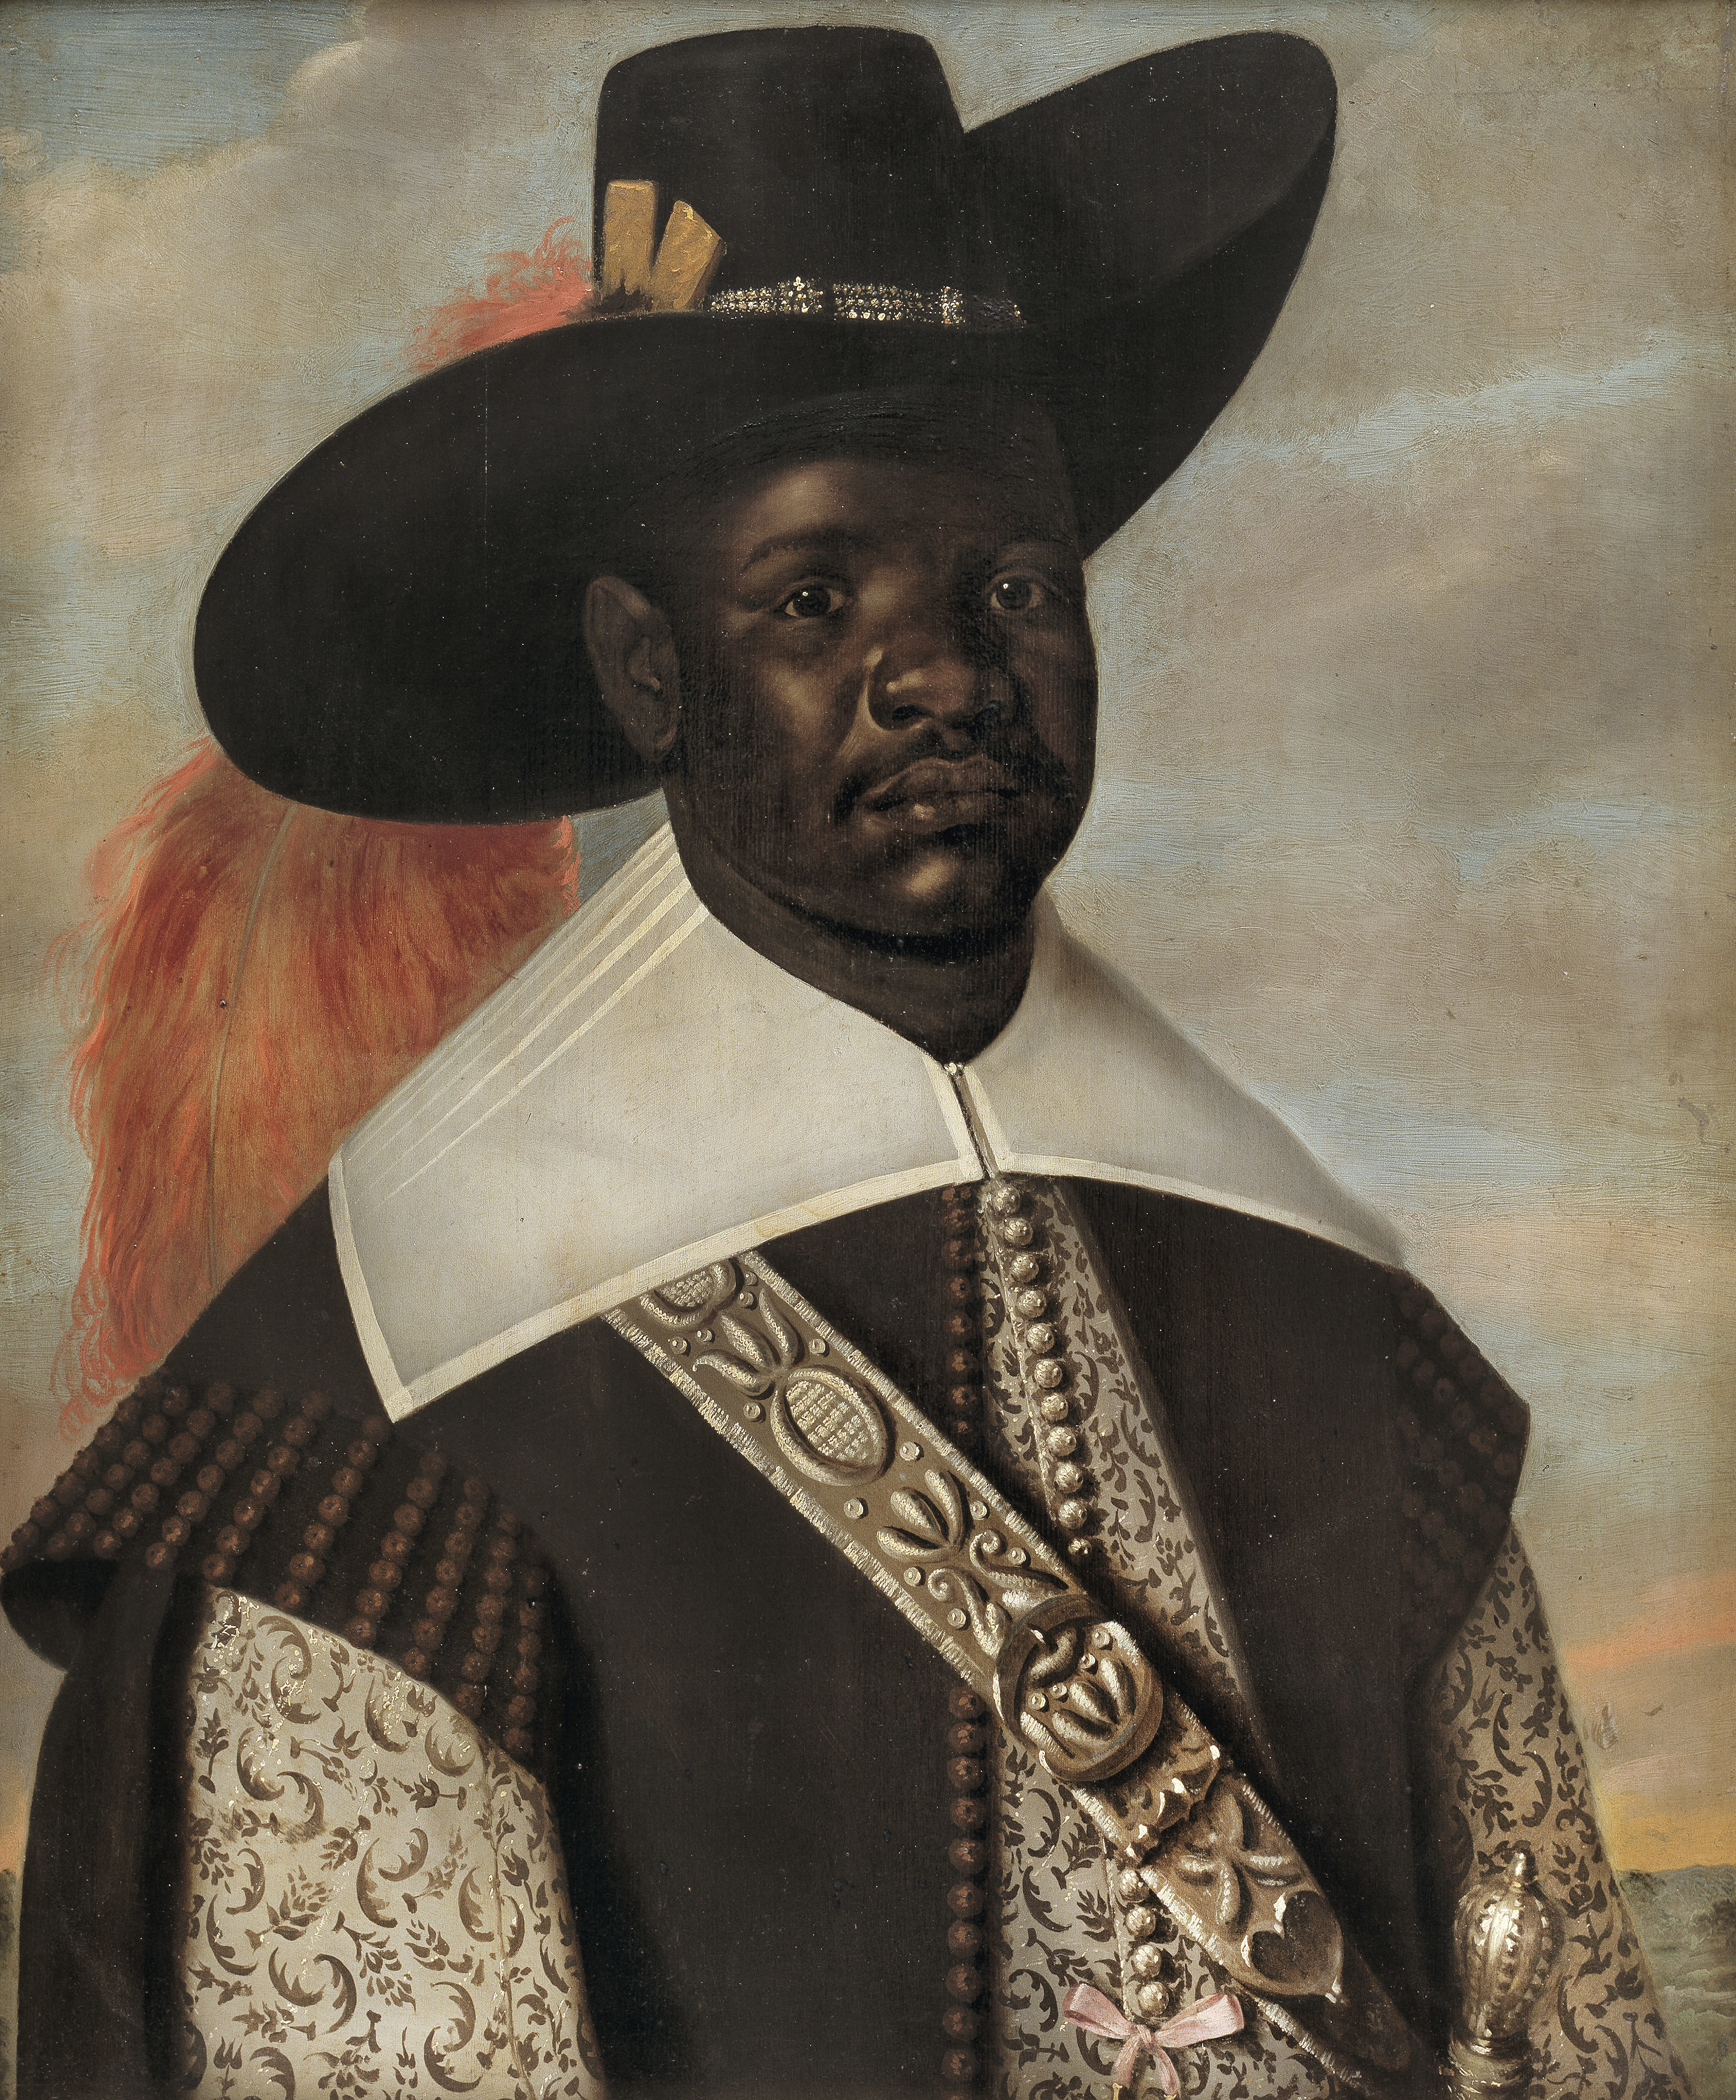 Don Miguel de Castro. Abgesandter des Kongo by Jaspar Beckx - ca. 1643 - 75 x 62 cm Statens Museum for Kunst (SMK)